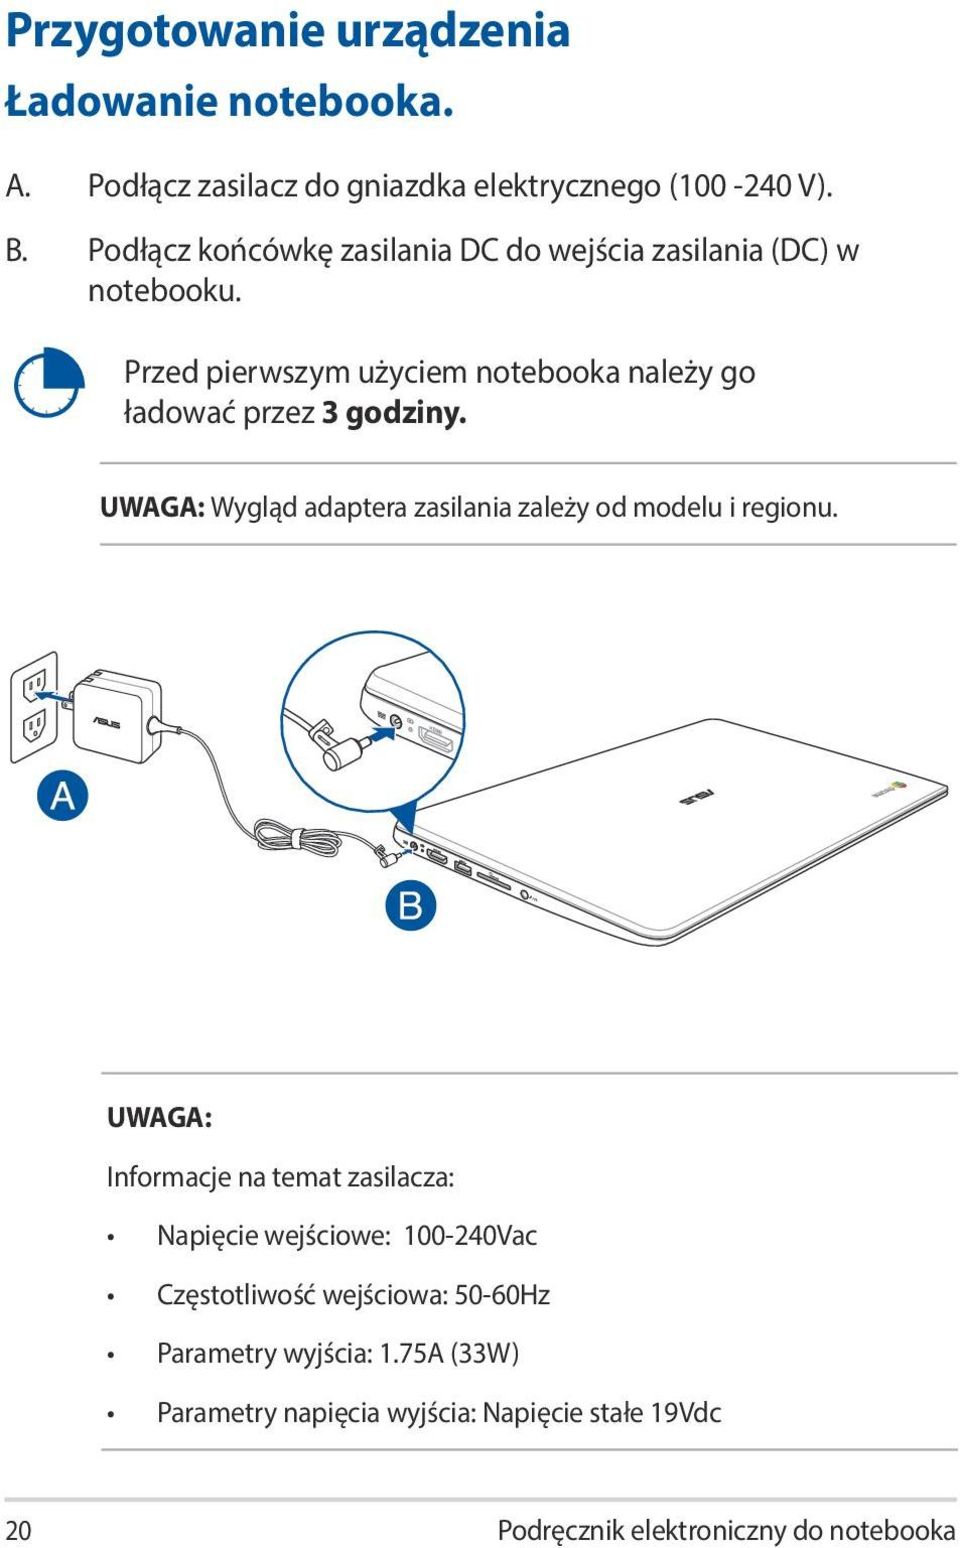 Przed pierwszym użyciem notebooka należy go ładować przez 3 godziny. UWAGA: Wygląd adaptera zasilania zależy od modelu i regionu.